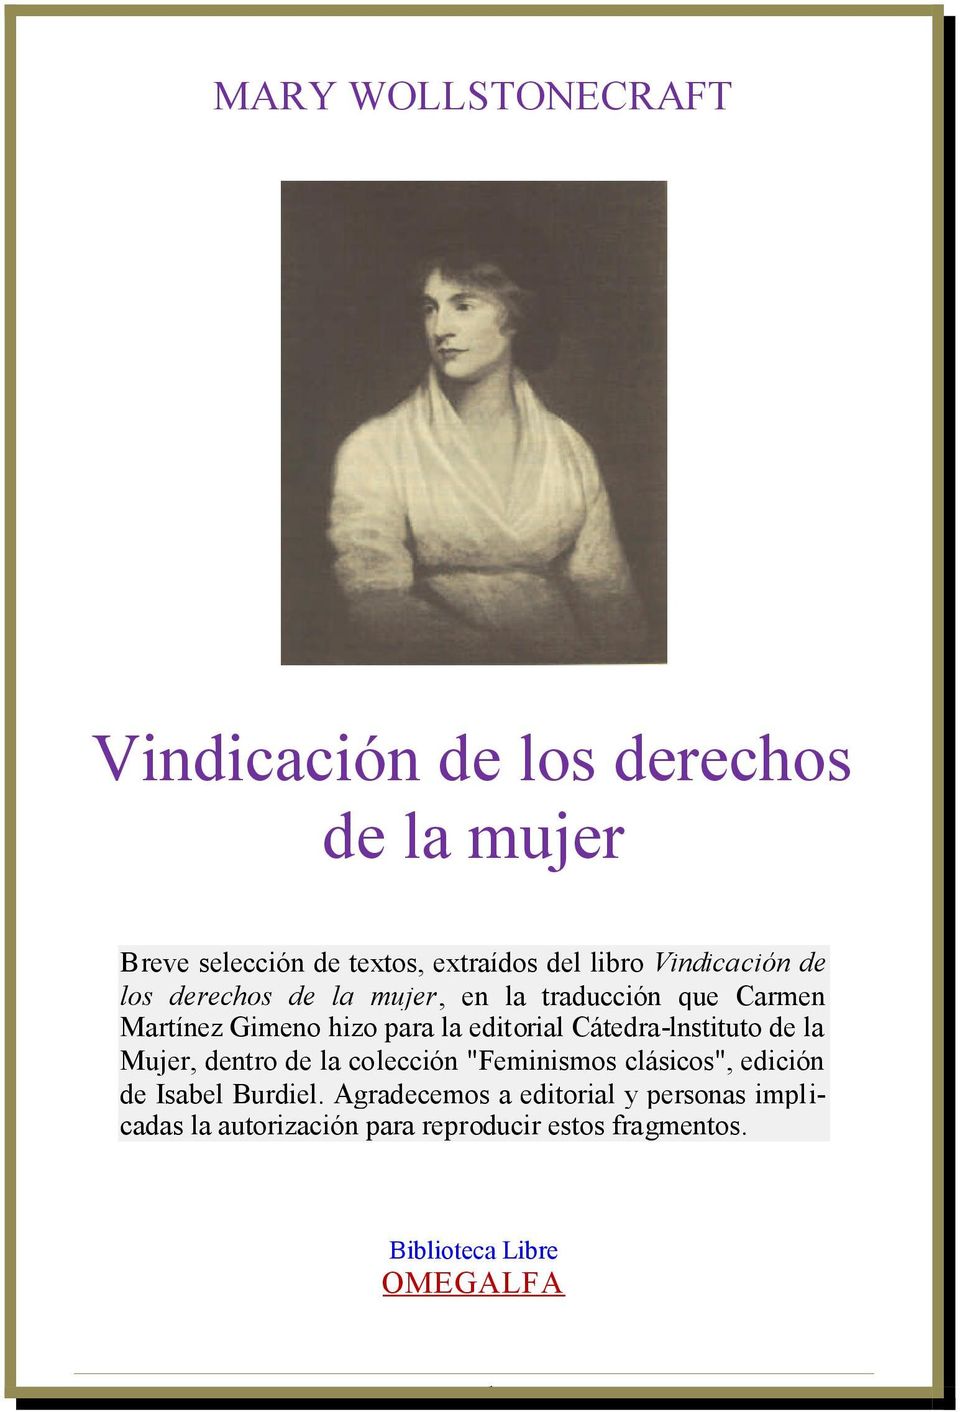 Cátedra-lnstituto de la Mujer, dentro de la colección "Feminismos clásicos", edición de Isabel Burdiel.